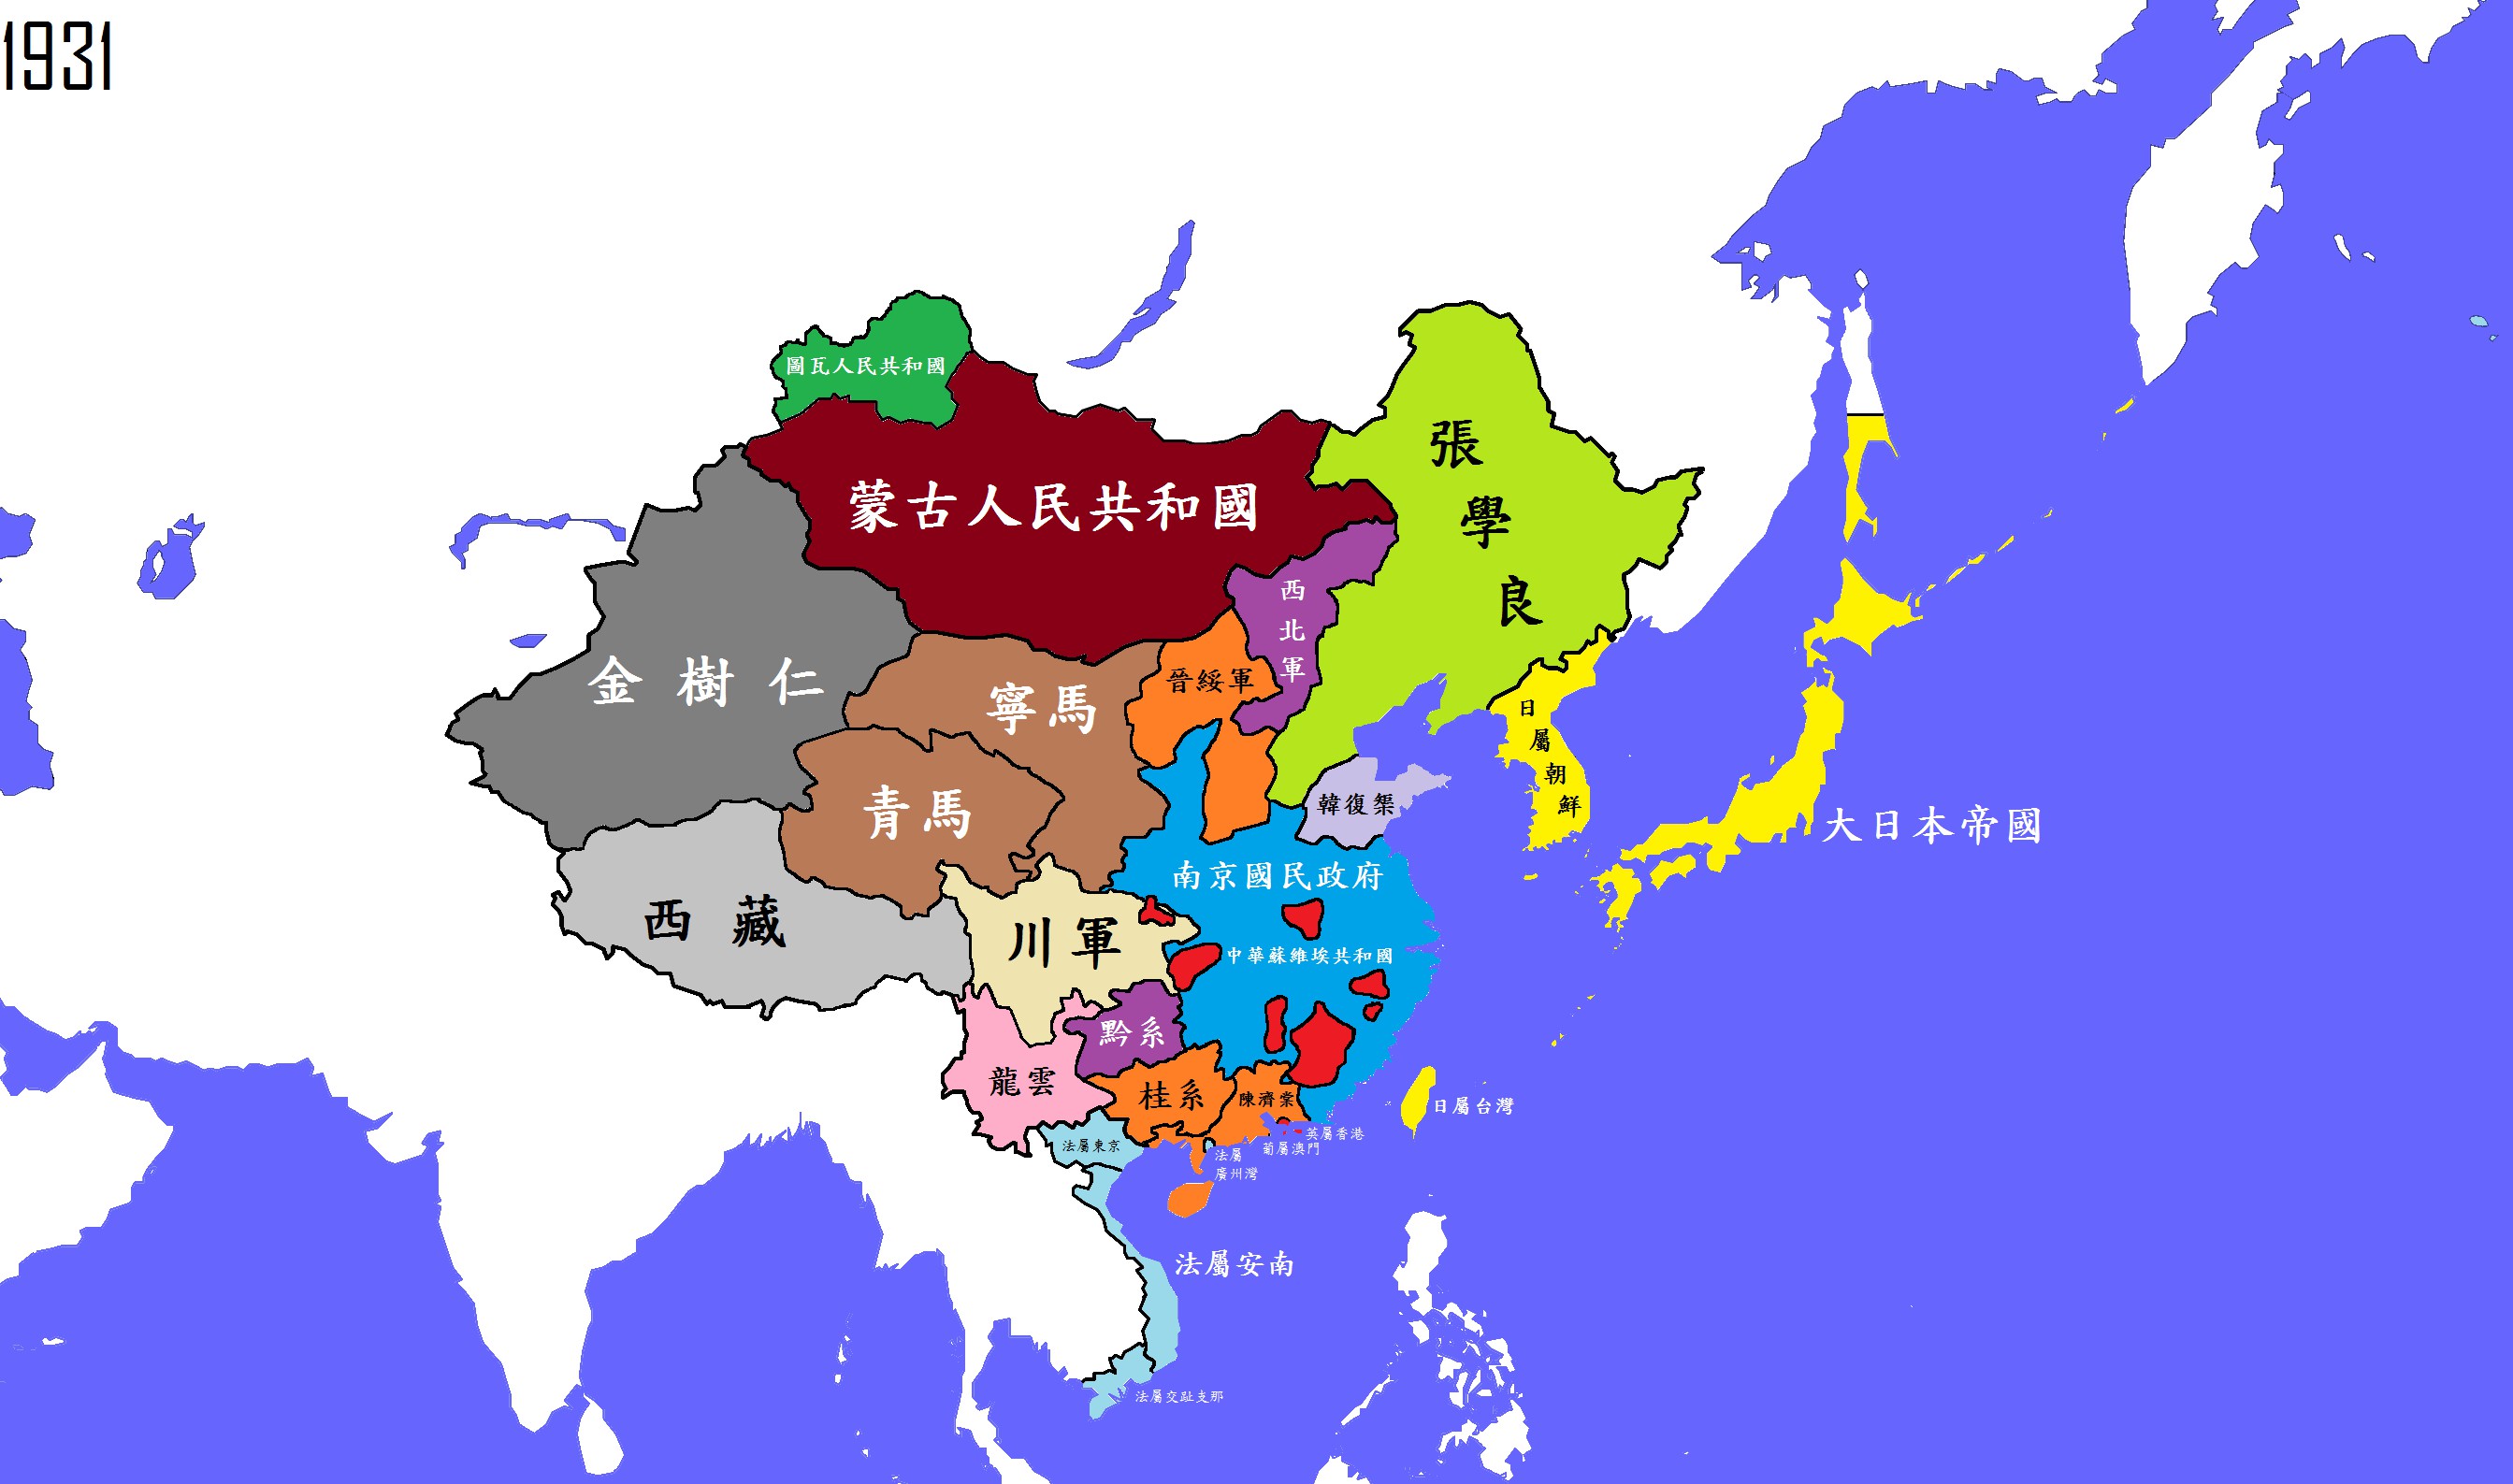 中国地图 中国 中国疆域 >> 公元1931年(中华民国)图片